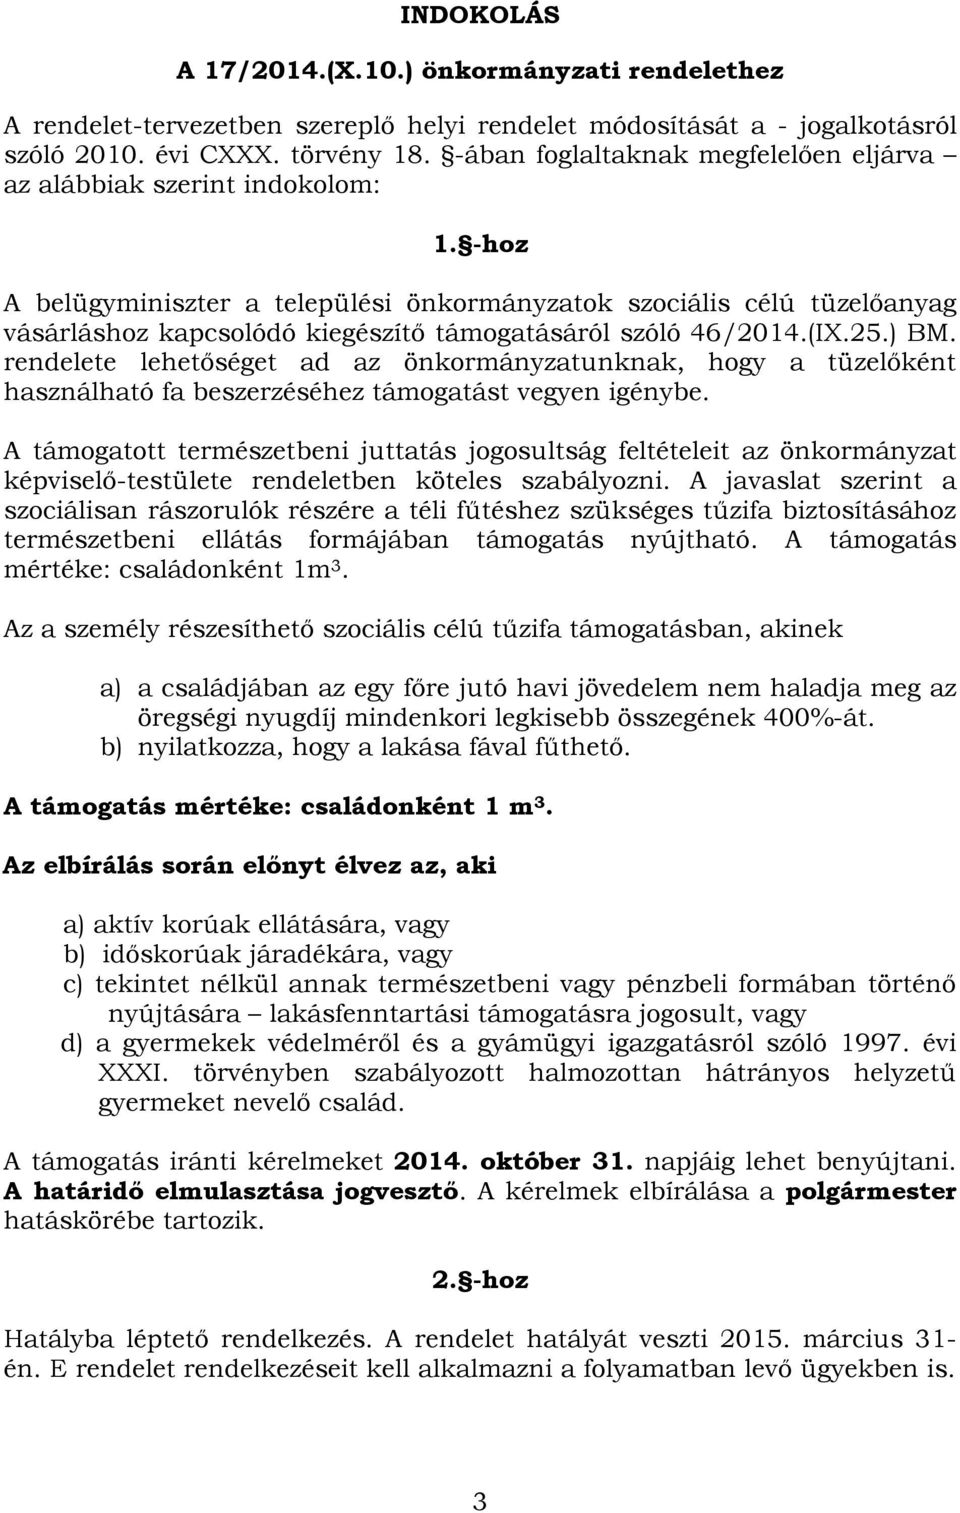 -hoz A belügyminiszter a települési önkormányzatok szociális célú tüzelőanyag vásárláshoz kapcsolódó kiegészítő támogatásáról szóló 46/2014.(IX.25.) BM.